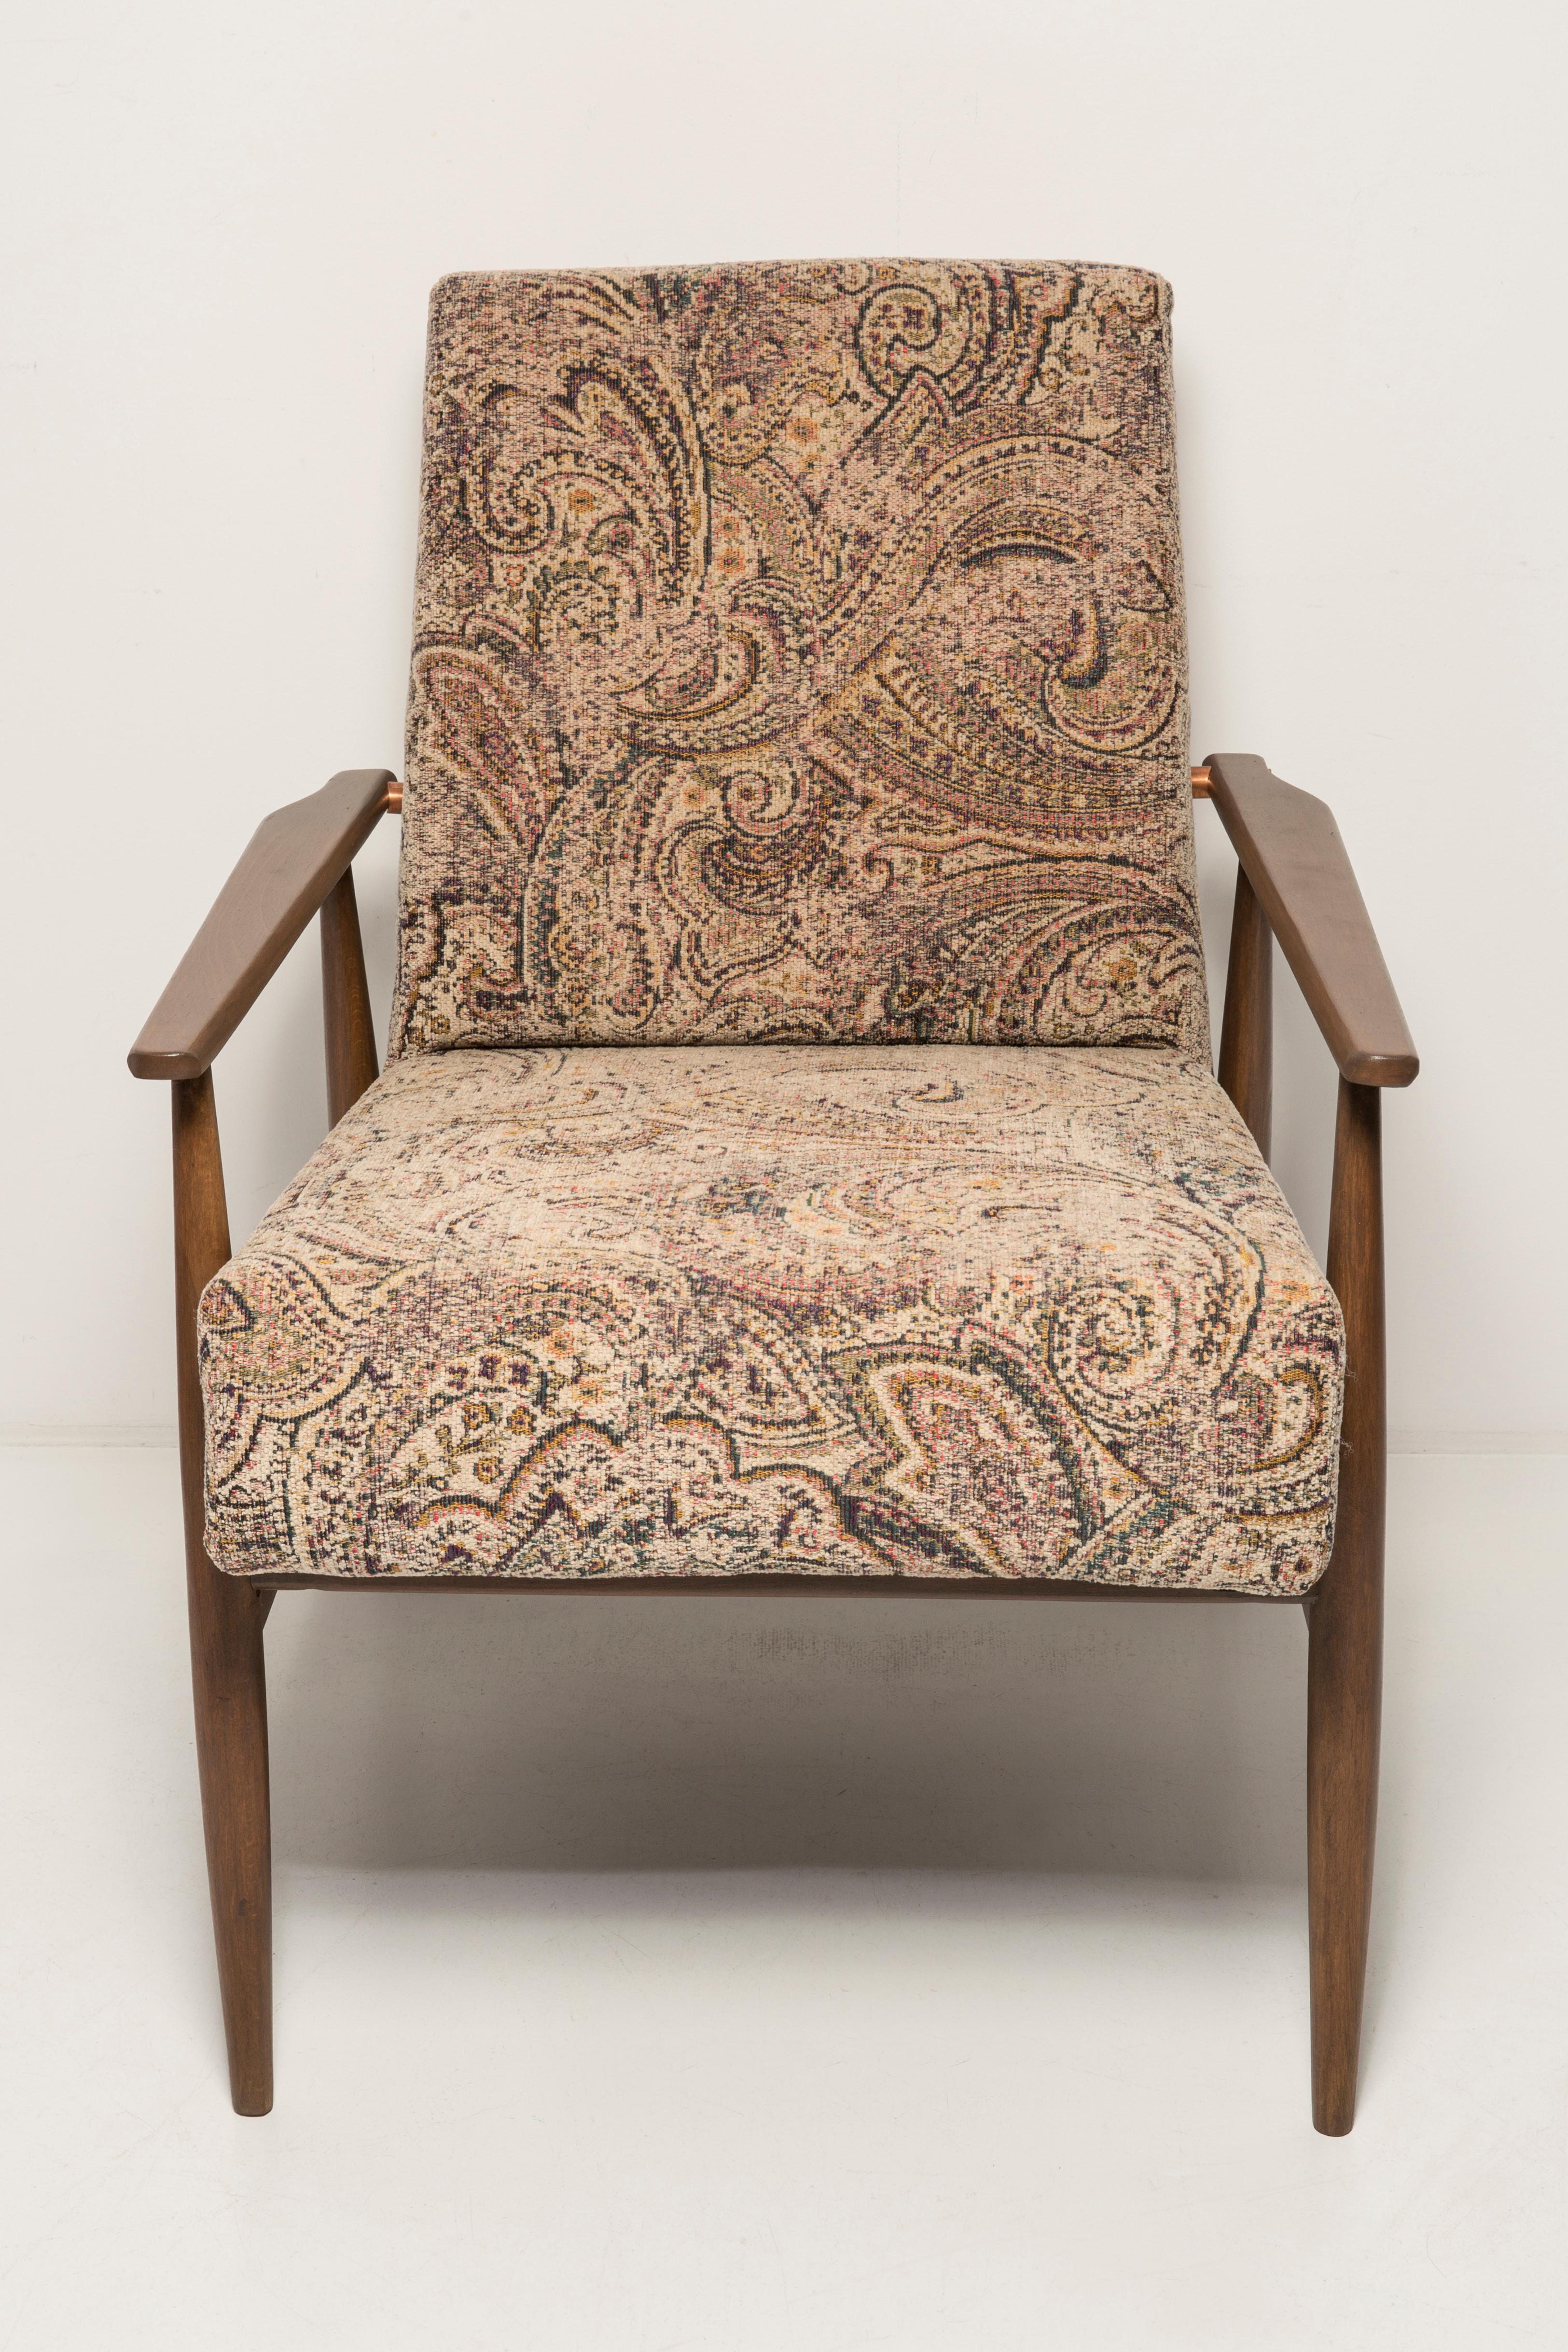 Magnifique fauteuil restauré, conçu par Henryk Lis. Meubles après rénovation complète de la menuiserie et de la tapisserie d'ameublement. Le tissu qui recouvre le dossier et l'assise est un velours italien de grande qualité. Le fauteuil sera parfait